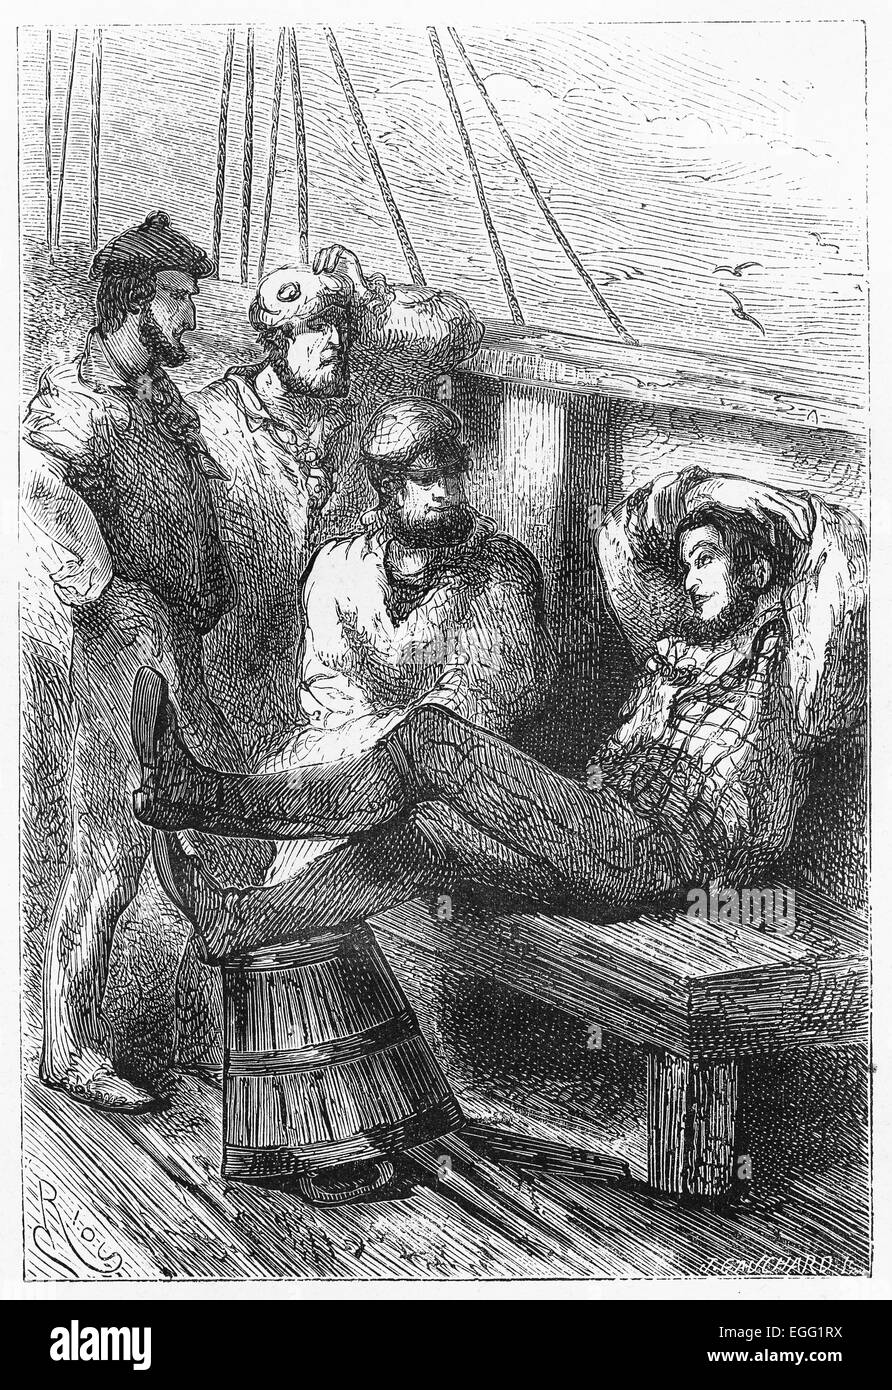 Joe parlando con i marinai - Immagine da Jules Verne Foto Stock